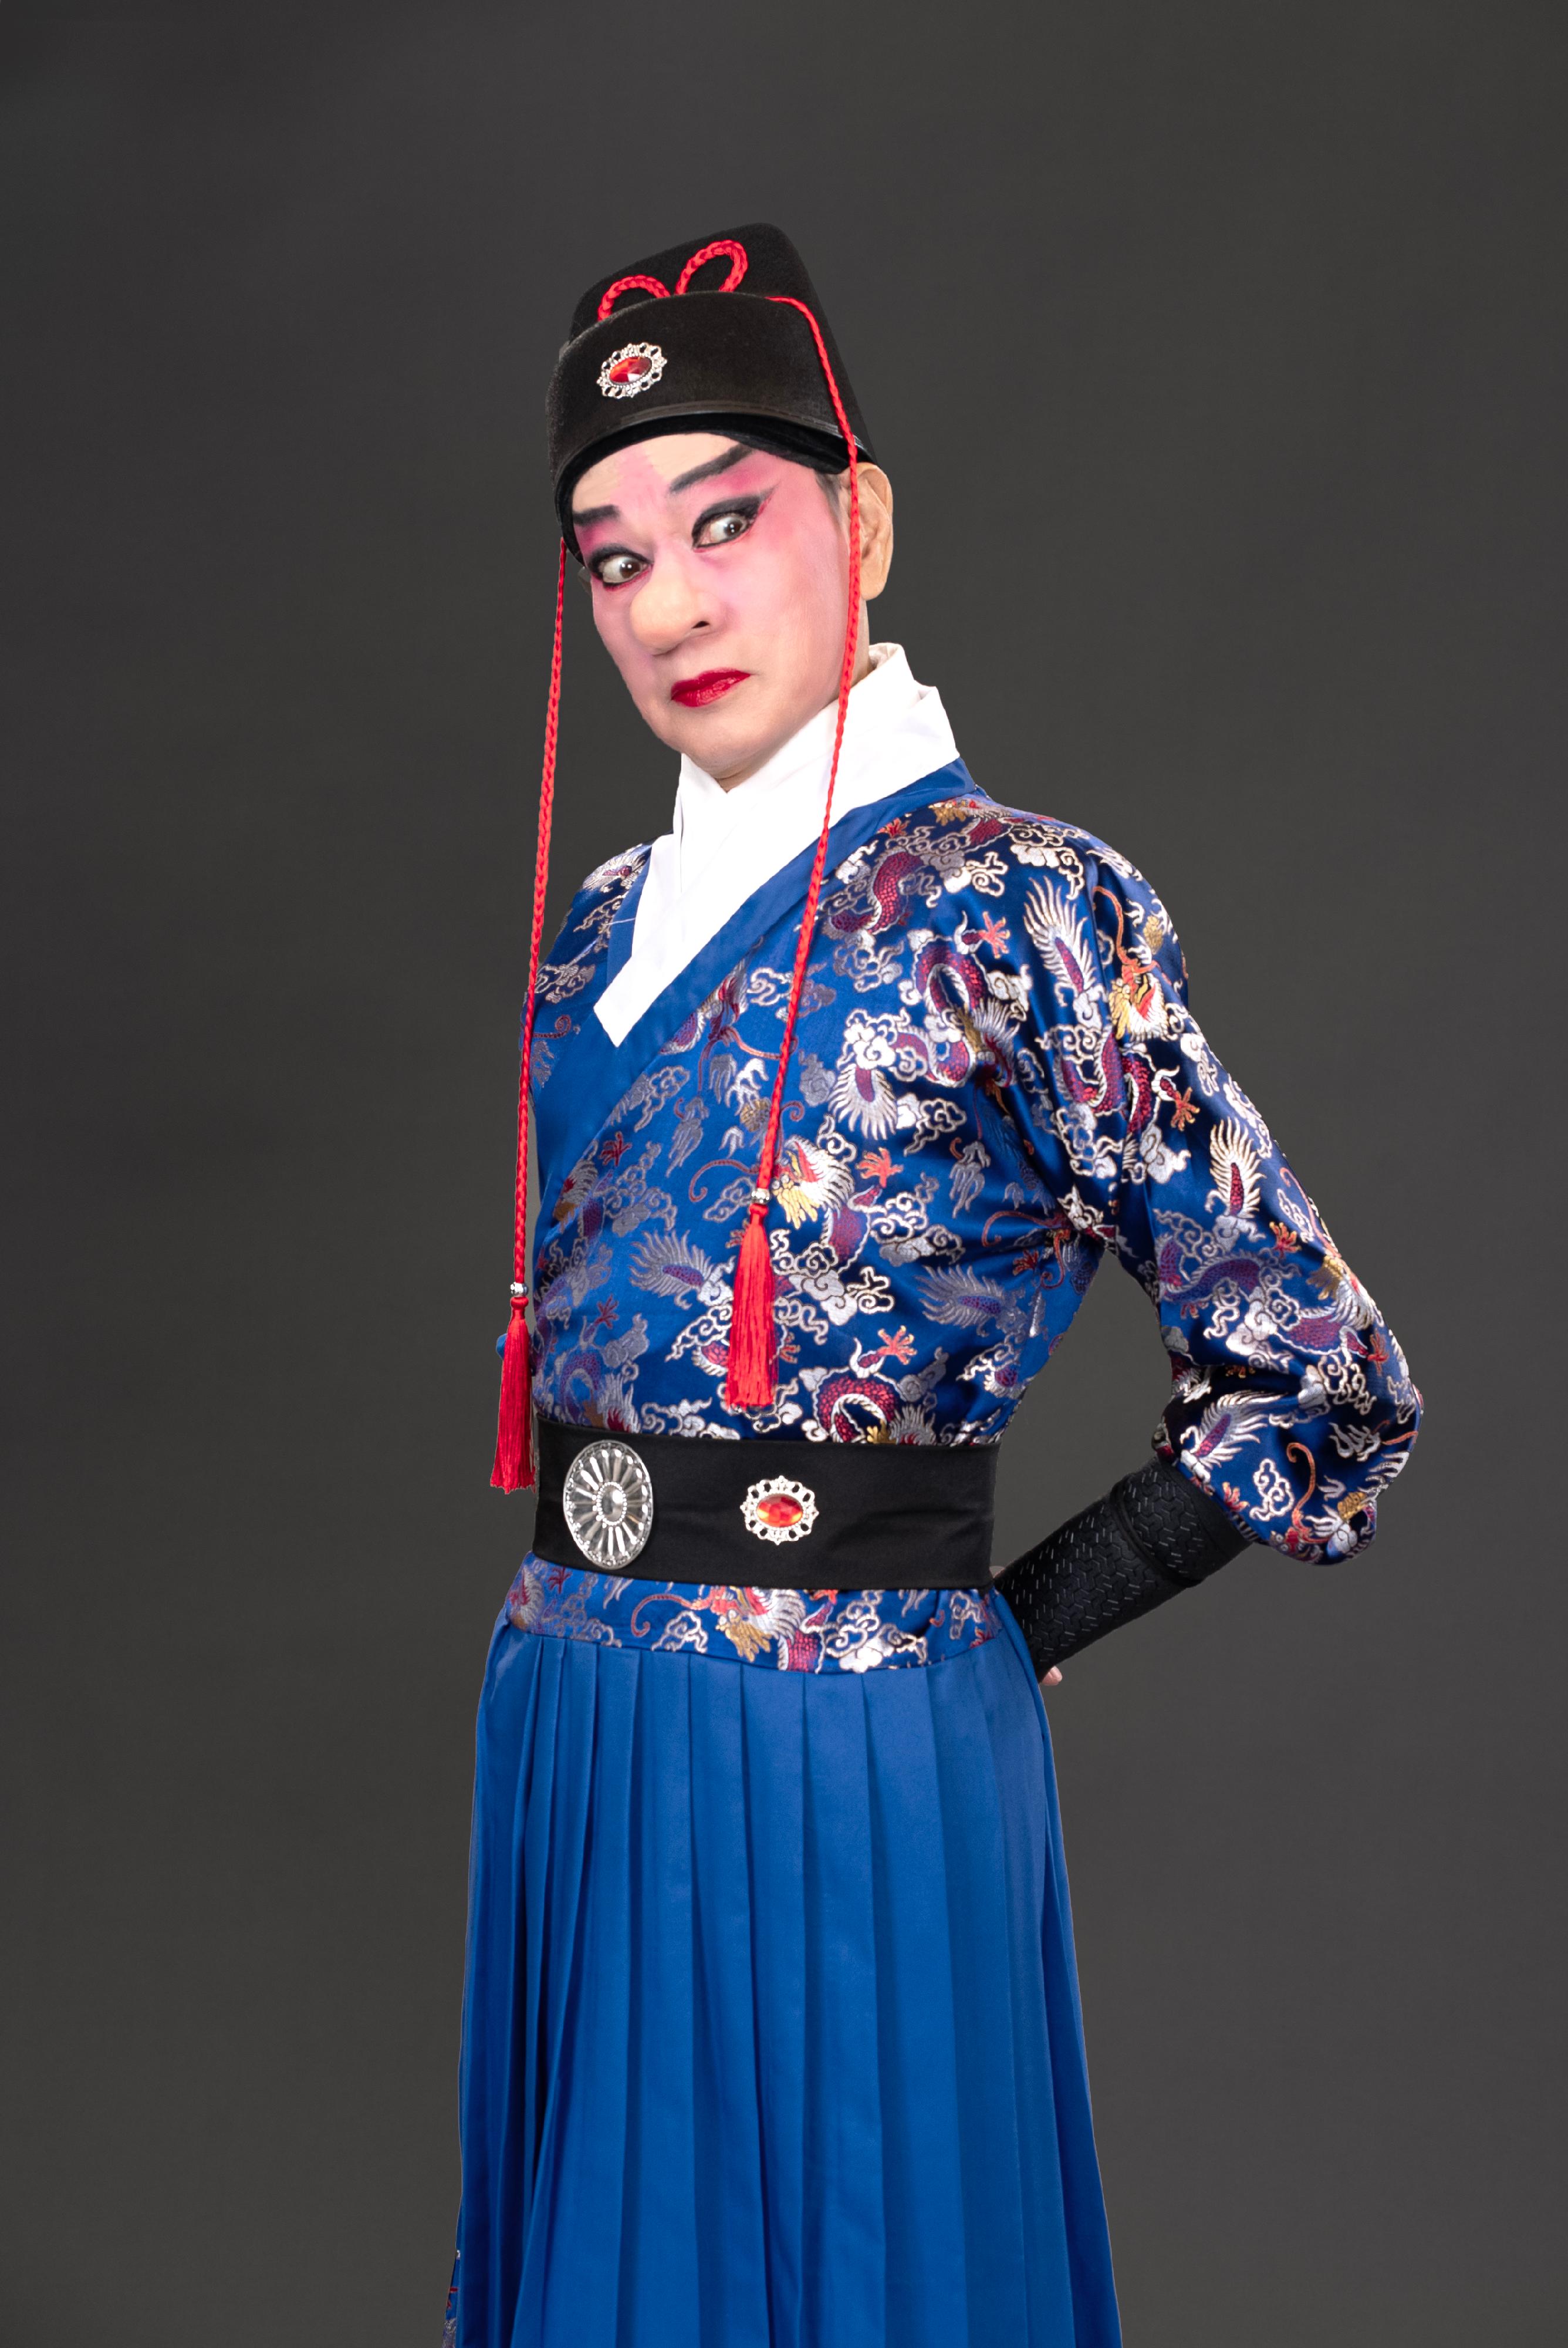 首届「中华文化节」将于六月中旬上演三场新编粤剧《大鼻子情圣》。图示粤剧名伶罗家英。